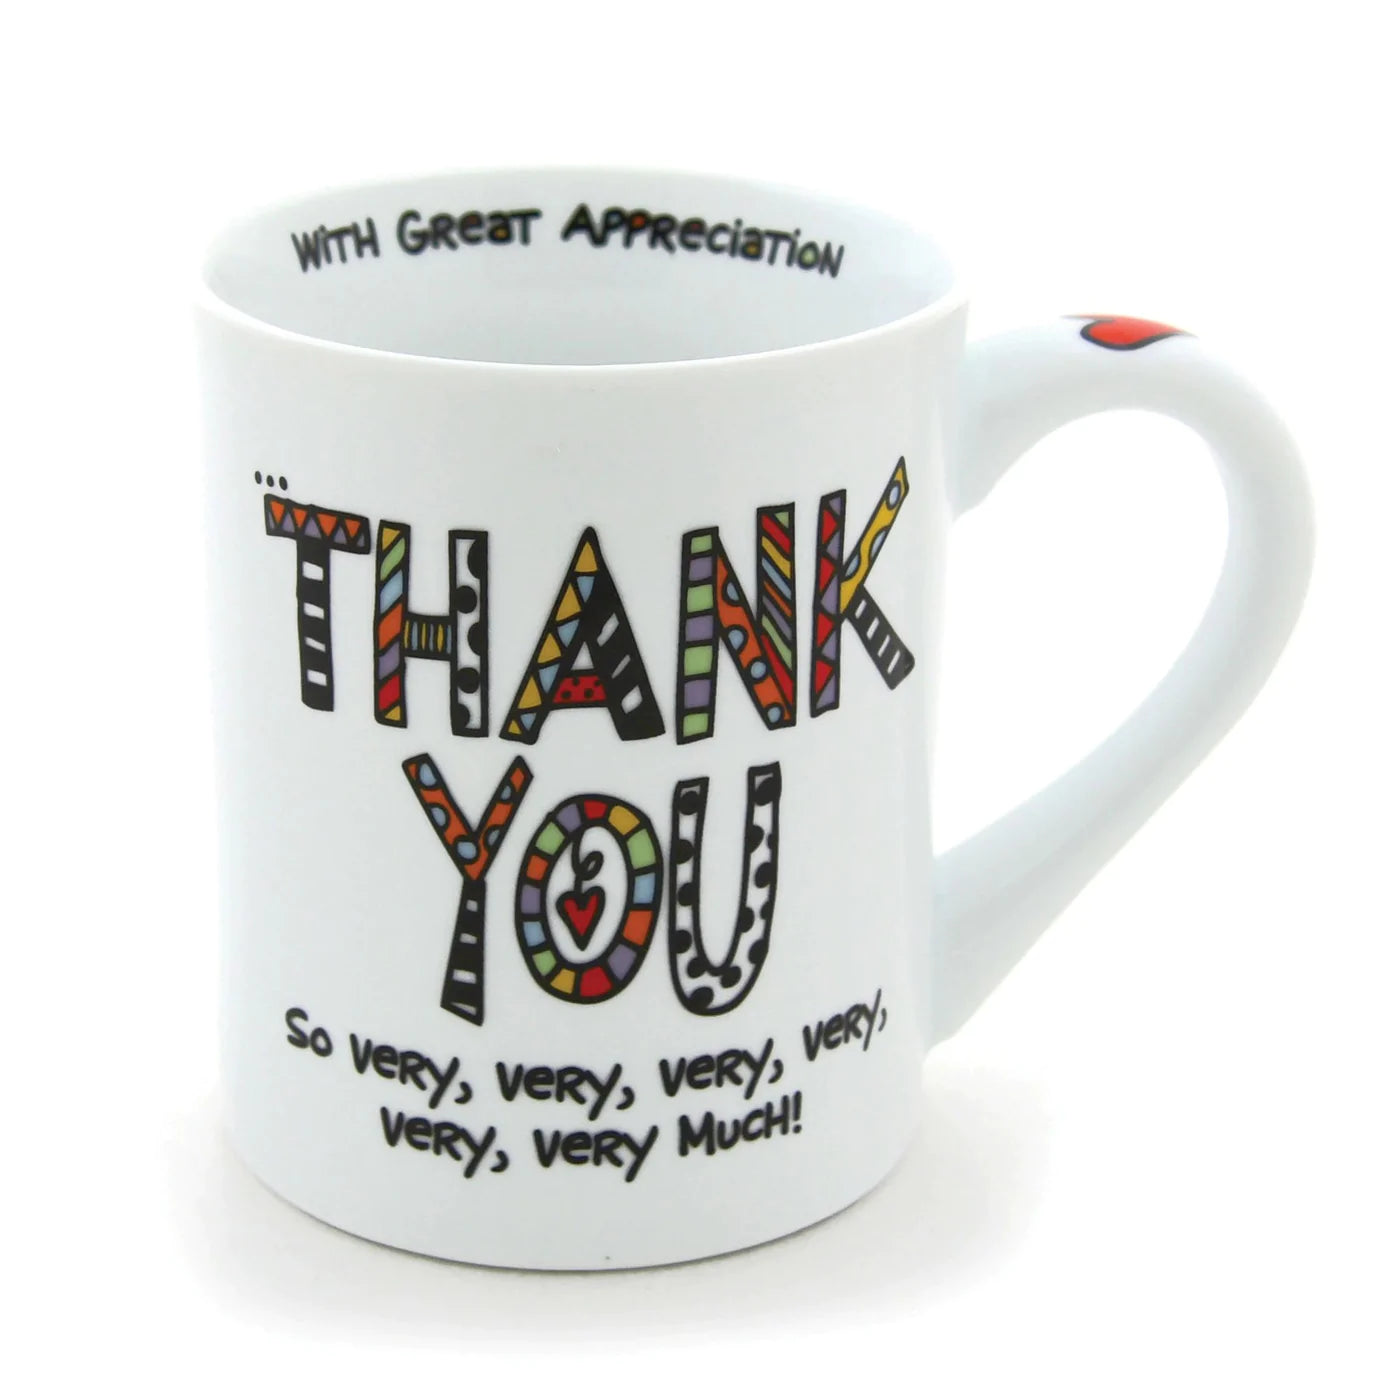 Thank You So Very Very Very Very Very Very Much Mug